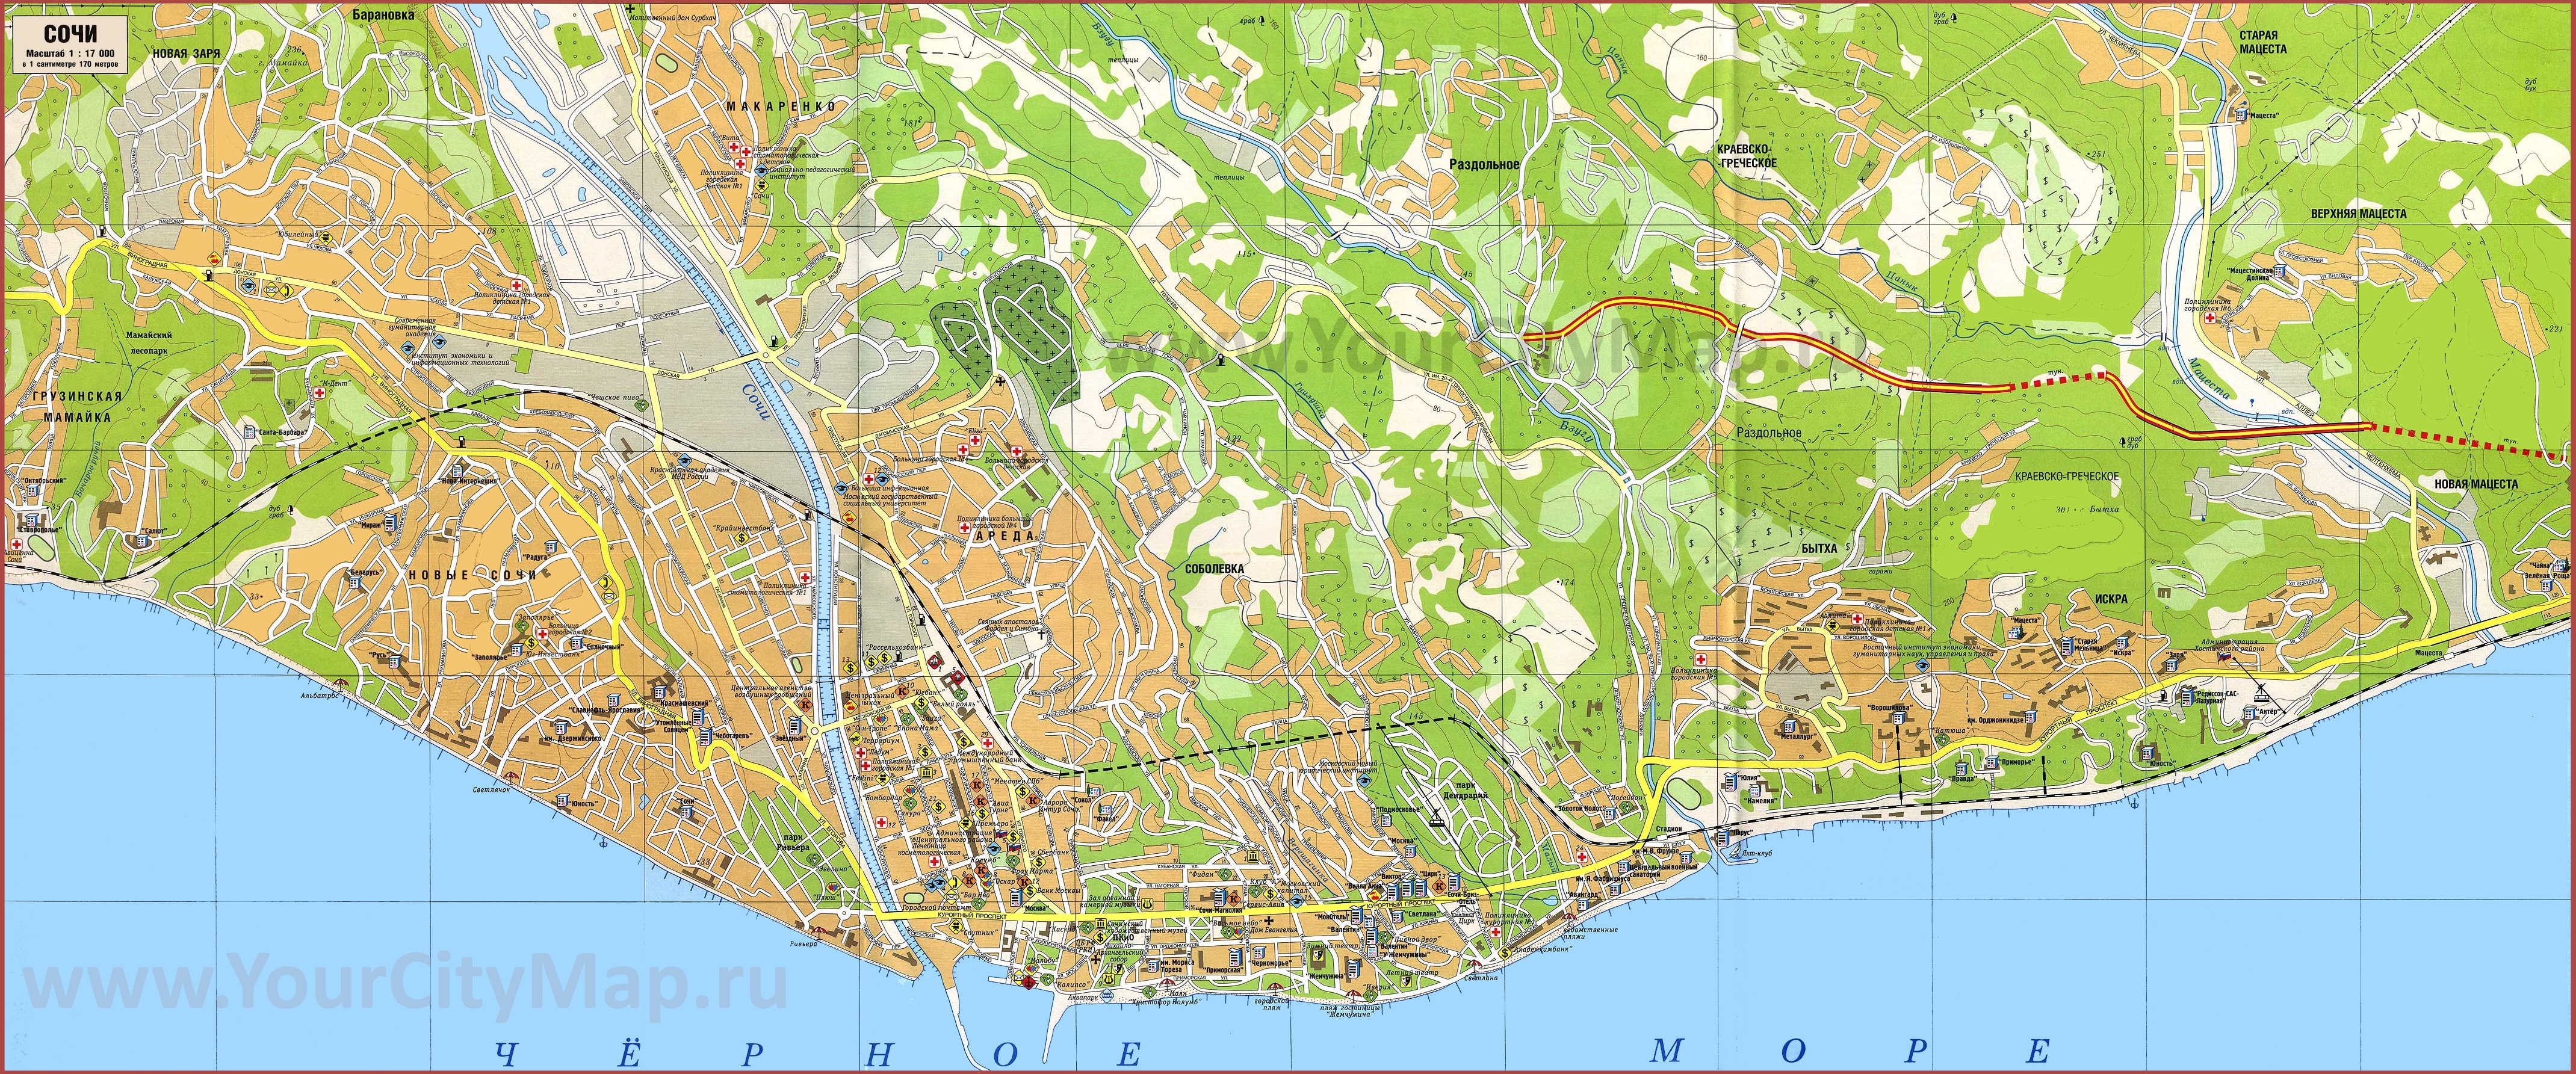 Туристическая карта Сочи с достопримечательностями и пляжами \ufeff